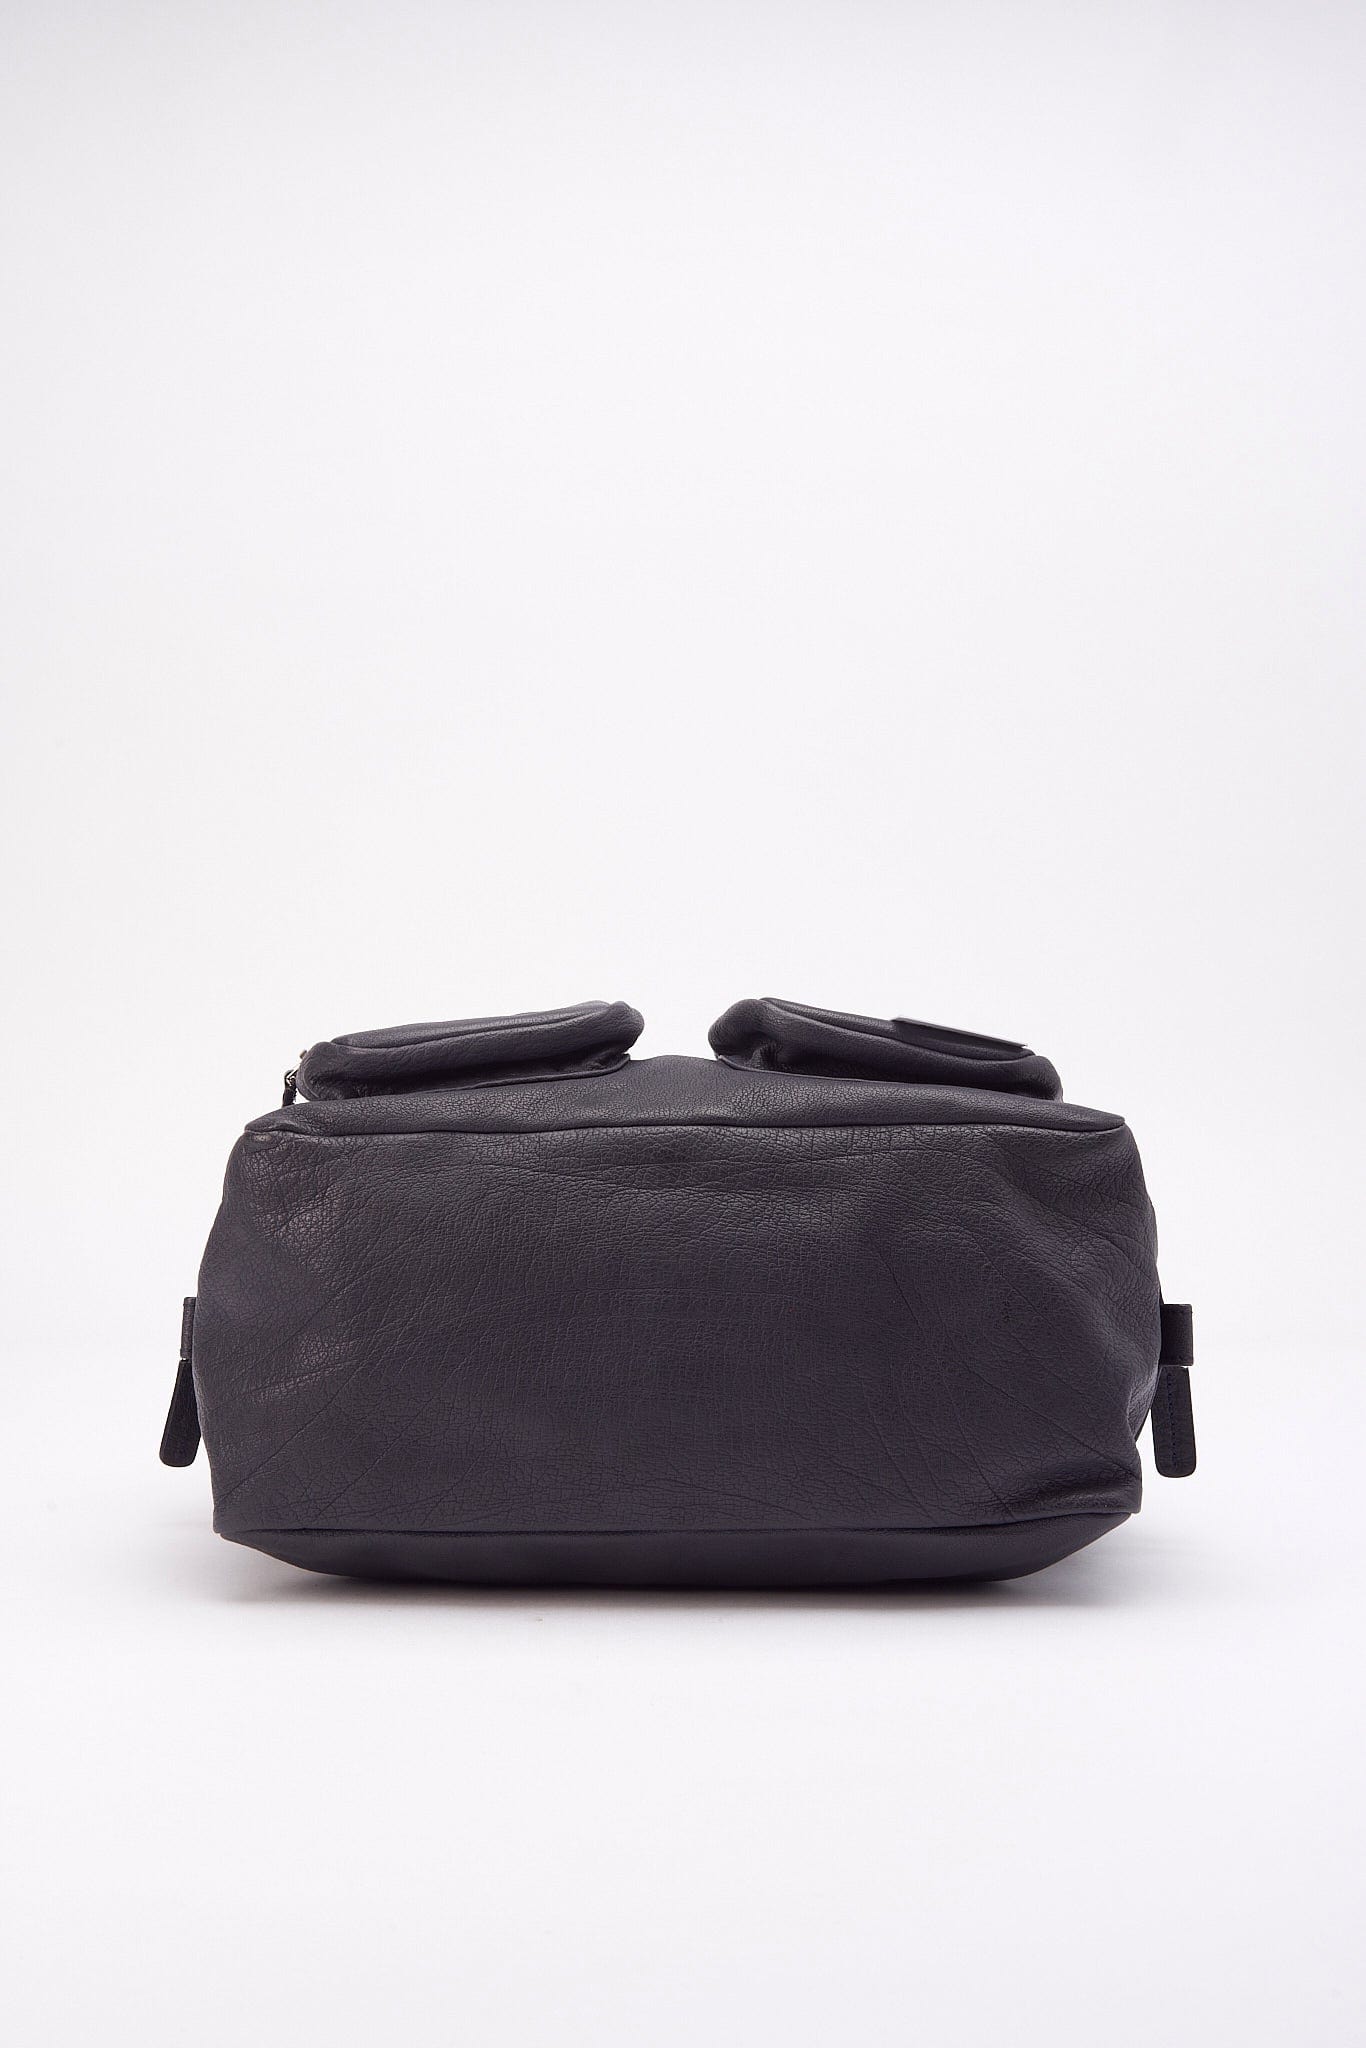 Marni Navy Leather Shoulder Bag With Pockets